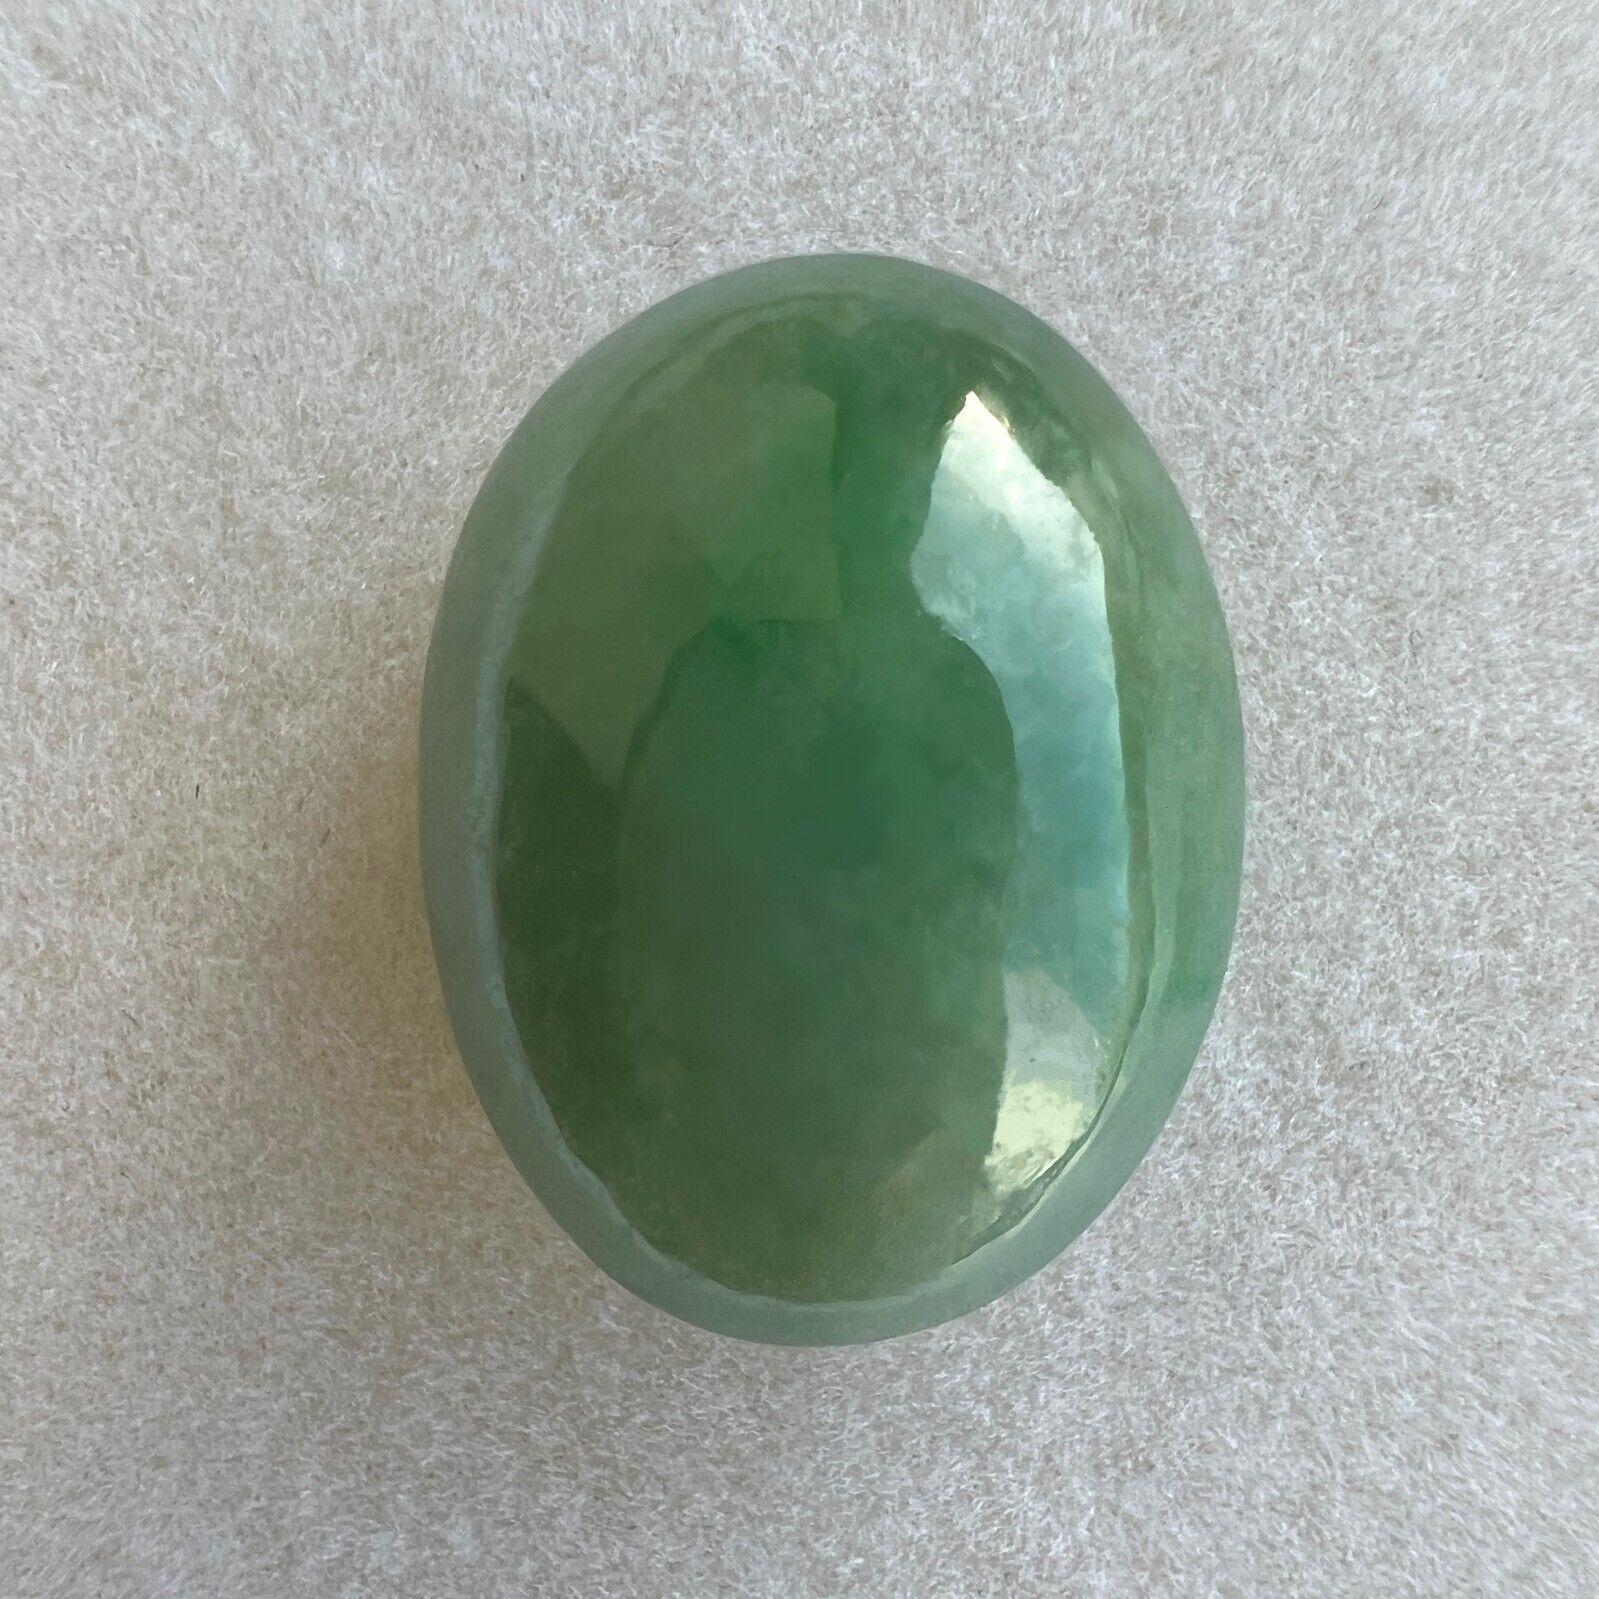 Énorme 17.57Ct GIA Certified Green Jade Jade 'A' Grade Oval Cabochon Rare Gem

Énorme pierre de jadéite verte non traitée certifiée par la GIA.
17.57 Carat belle pierre de jadéite non traitée avec une couleur verte tachetée et une excellente coupe